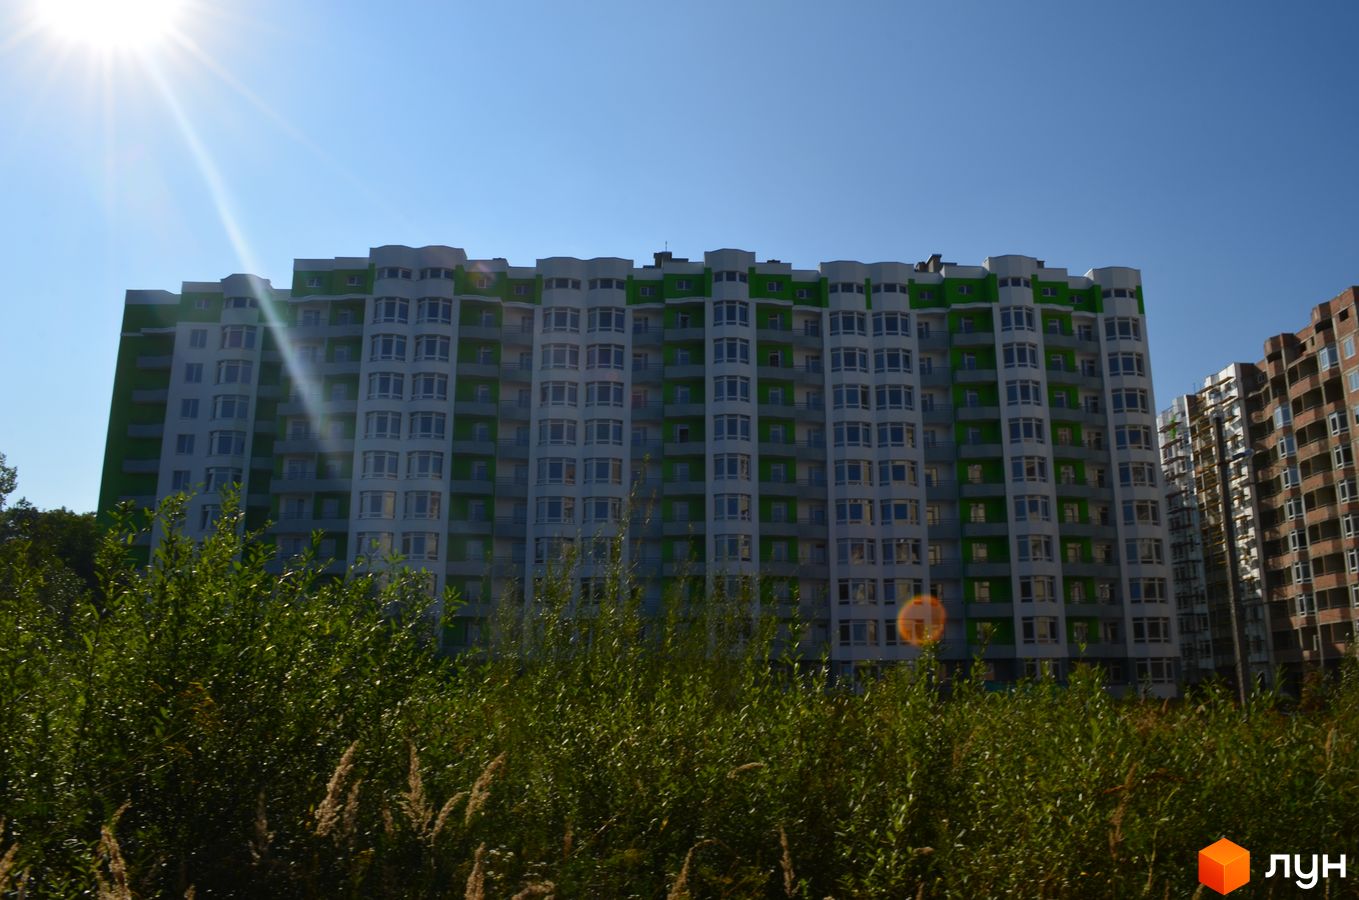 Моніторинг будівництва ЖК Еко-дім на Величковського - Ракурс 1, серпень 2017